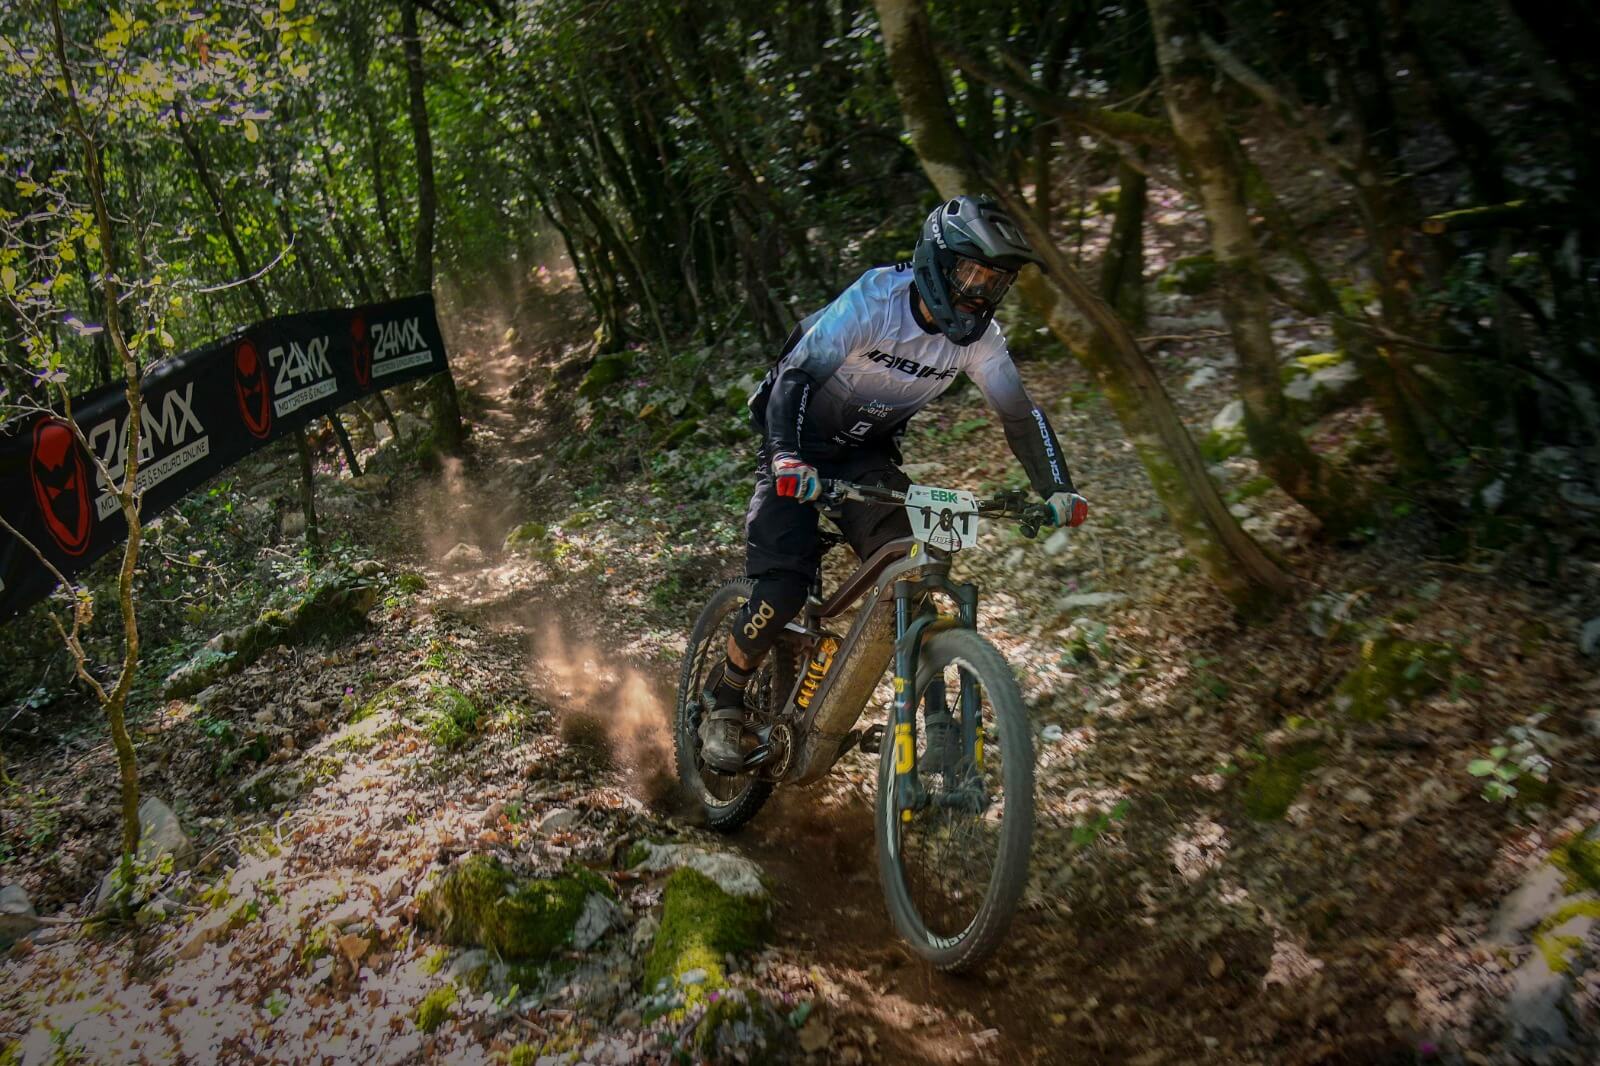 Andrea Garibbo, héros du Haibike, traverse une forêt à vélo pendant les Enduro World Series